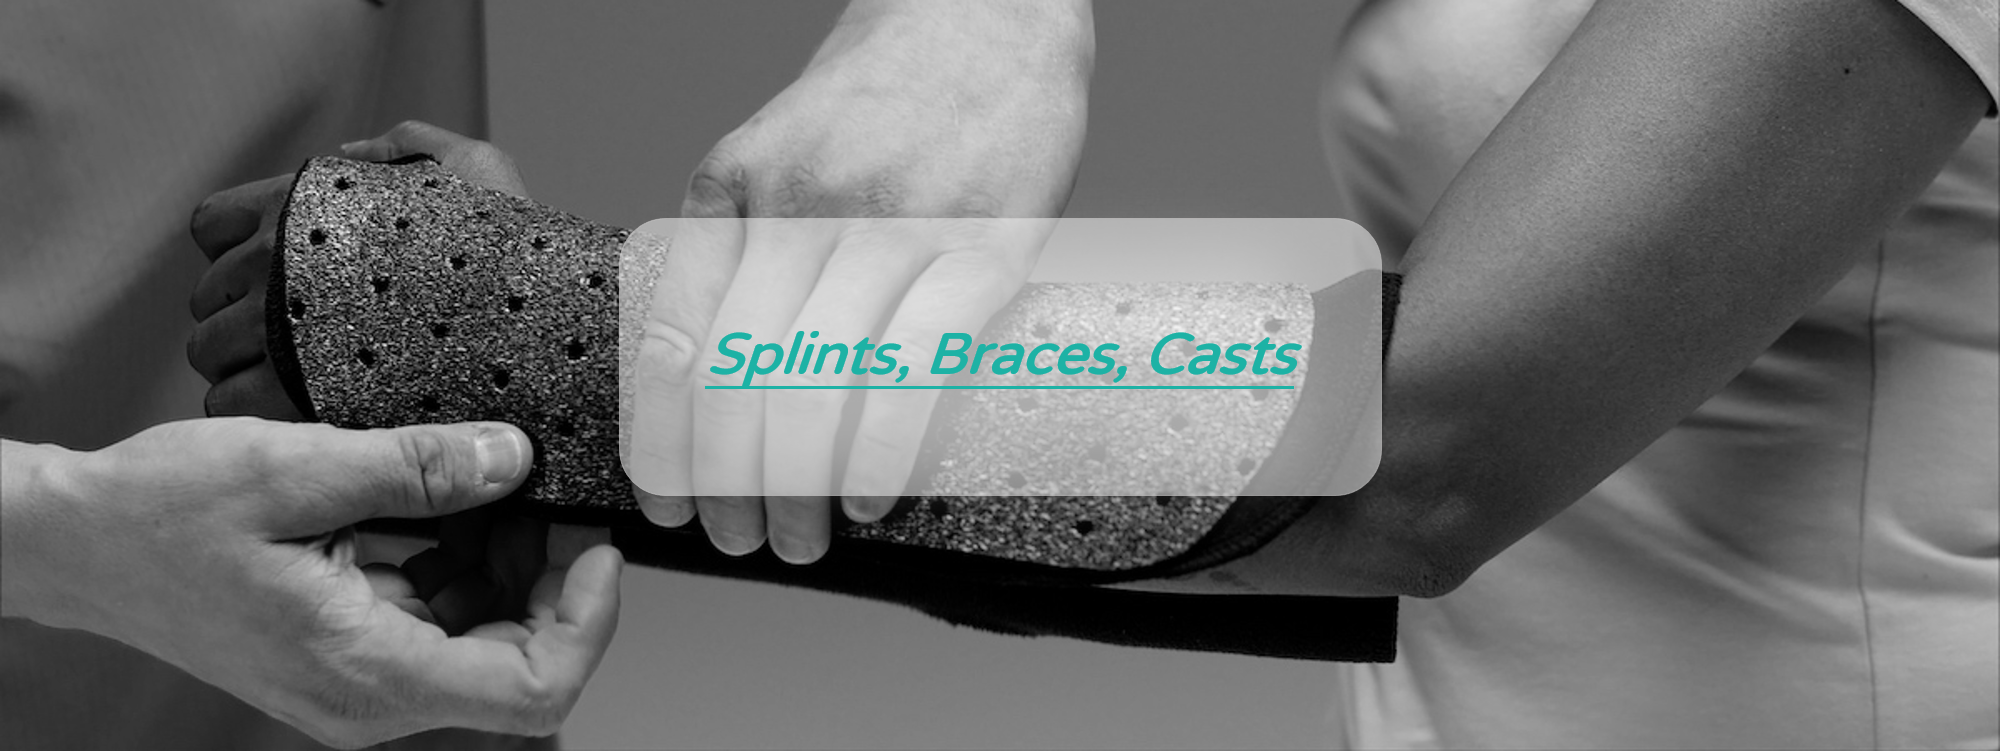 Plastic Splints, Braces, Casts